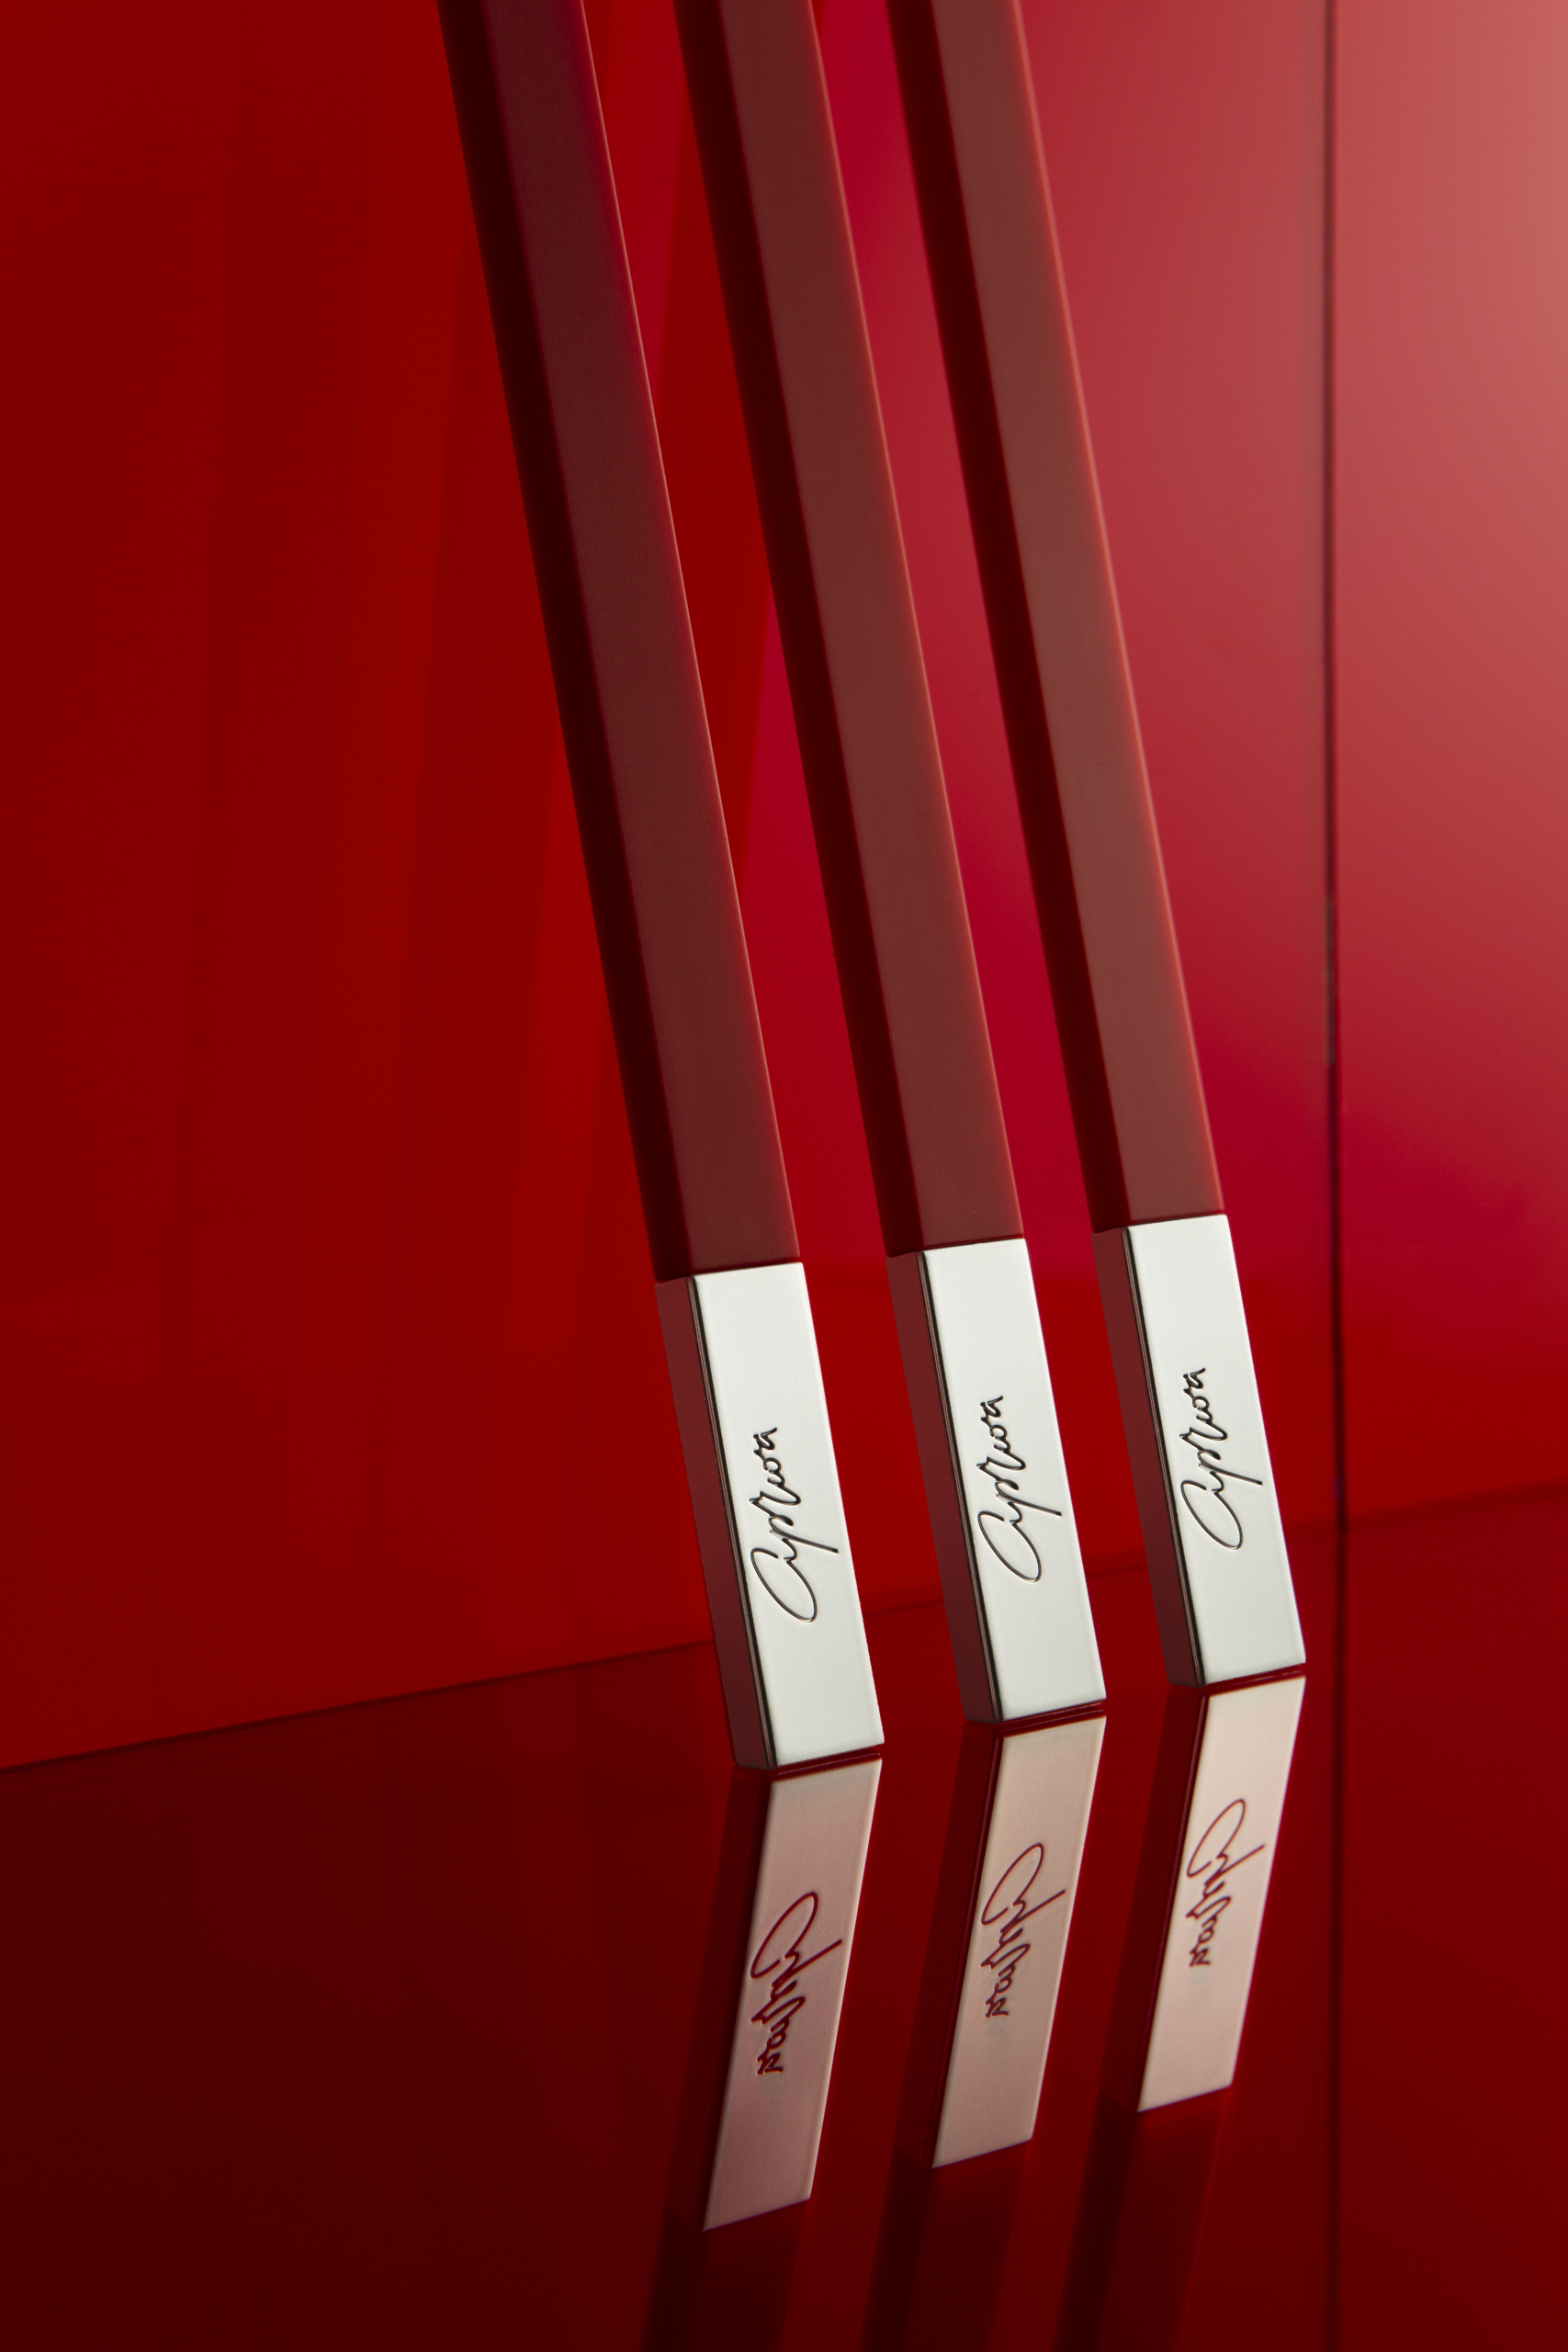 Дизайнерская зубная щетка красная с серебром SLIM by Apriori